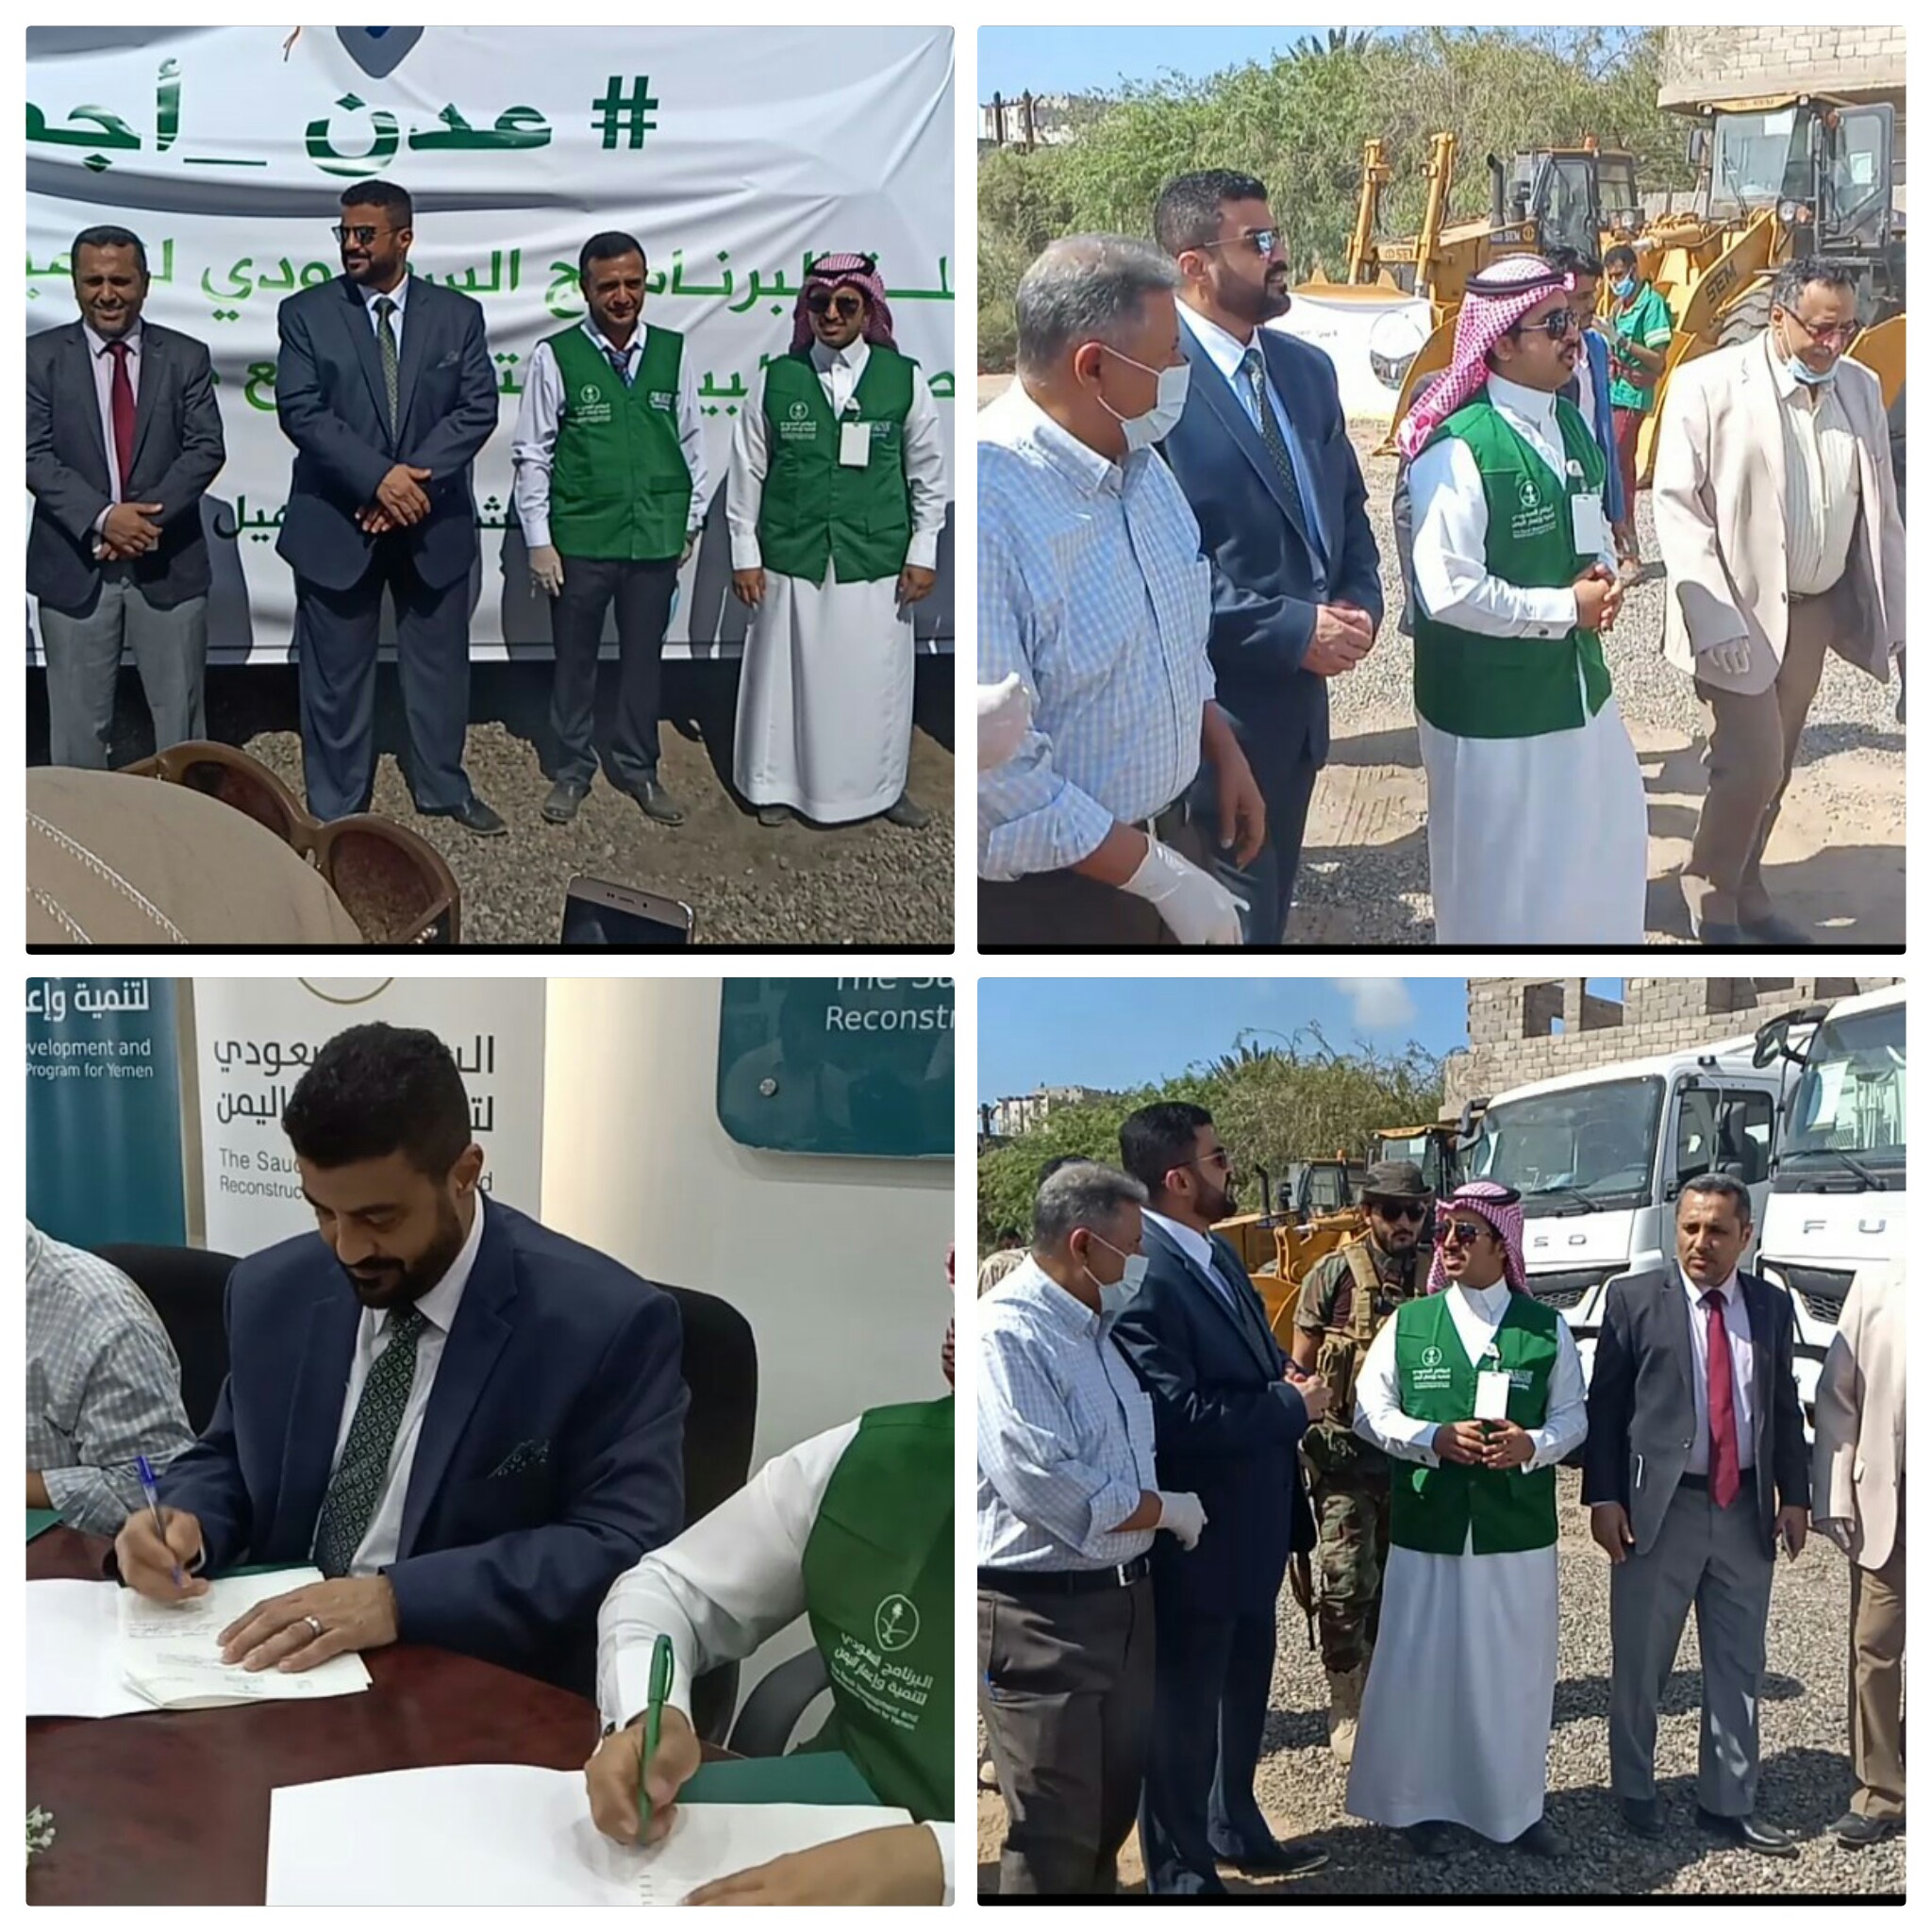 محافظ عدن يبرم إتفاقية مشتركة مع البرنامج السعودي لتنمية وإعمار اليمن لدعم صندوق النظافة والتحسين